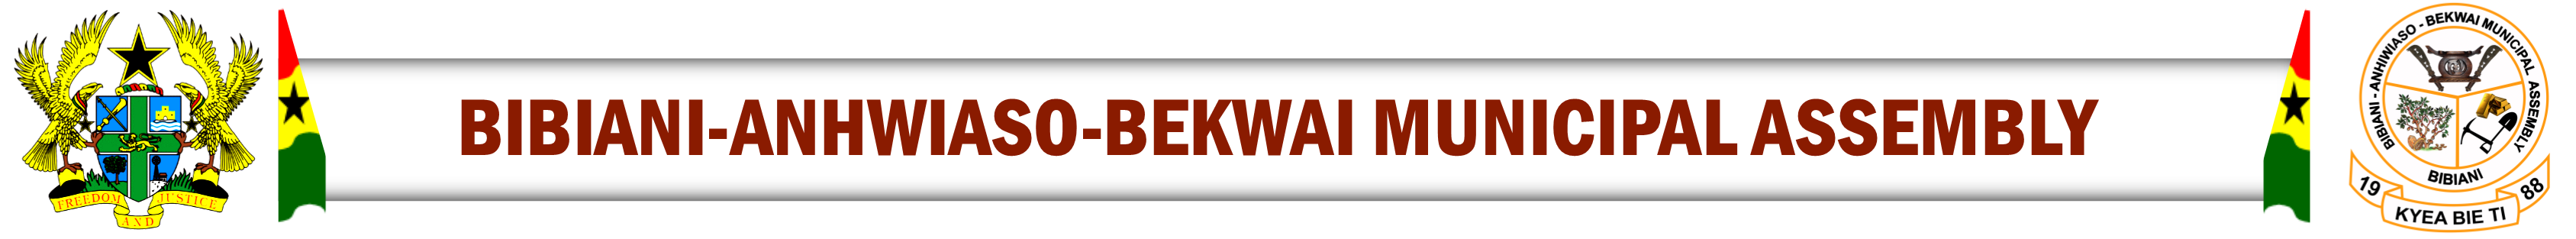 Bibiani Anhwiaso Bekwai Municipal Assembly Logo